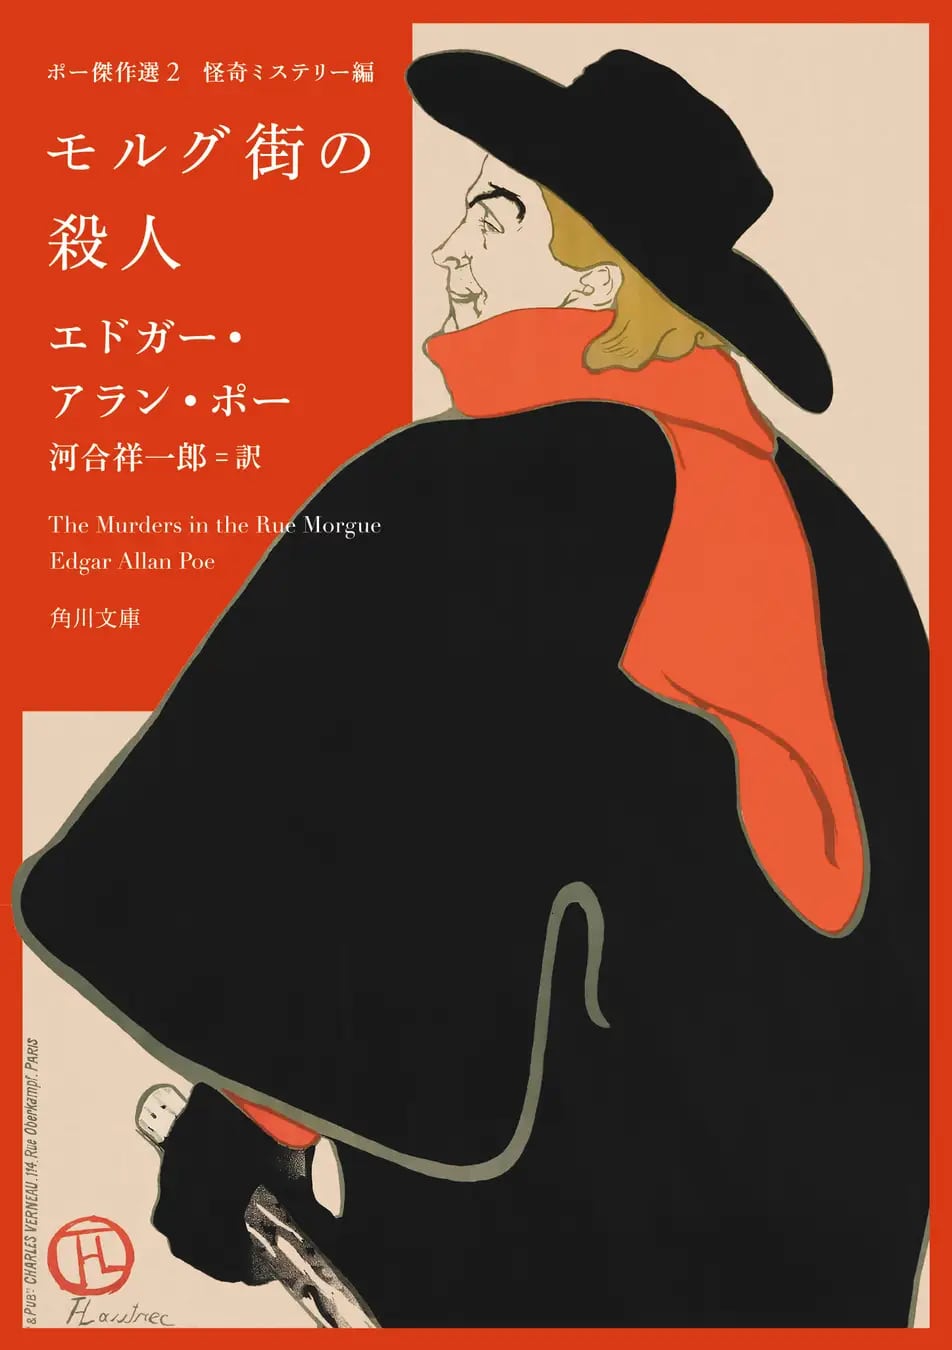 【黒猫】探偵ものやホラー小説が有名なエドガー・アラン・ポーの代表作【モルグ街の殺人】